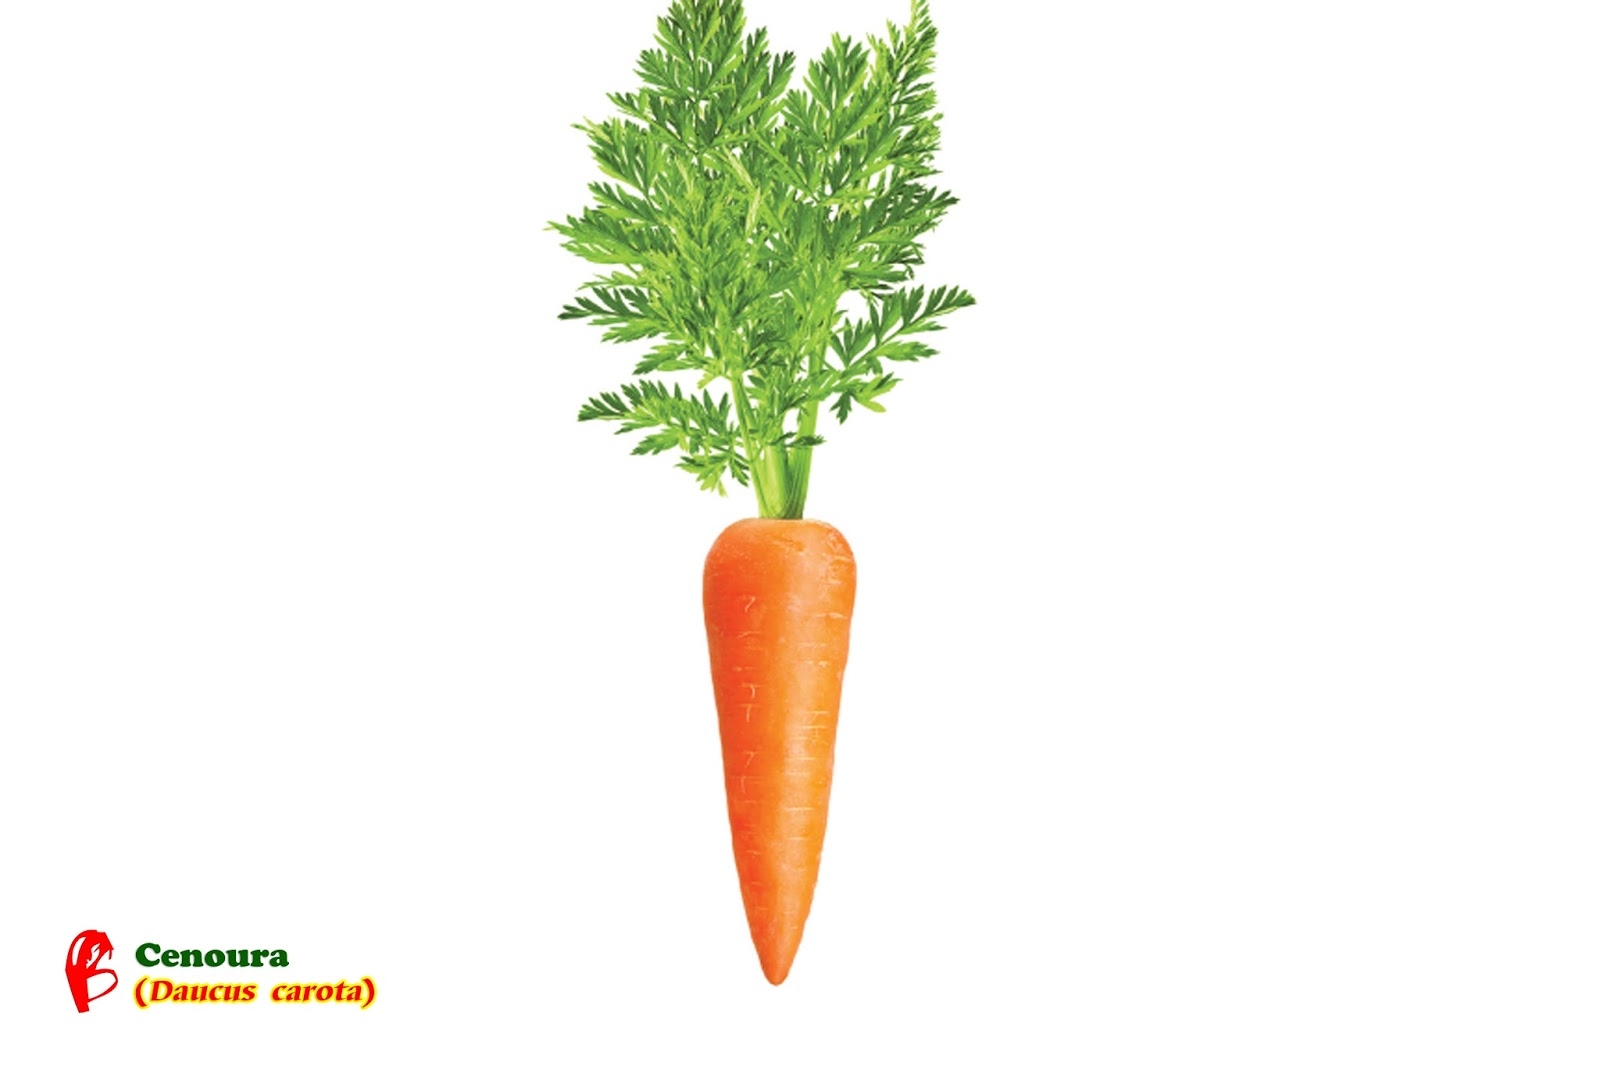 Ботва моркови